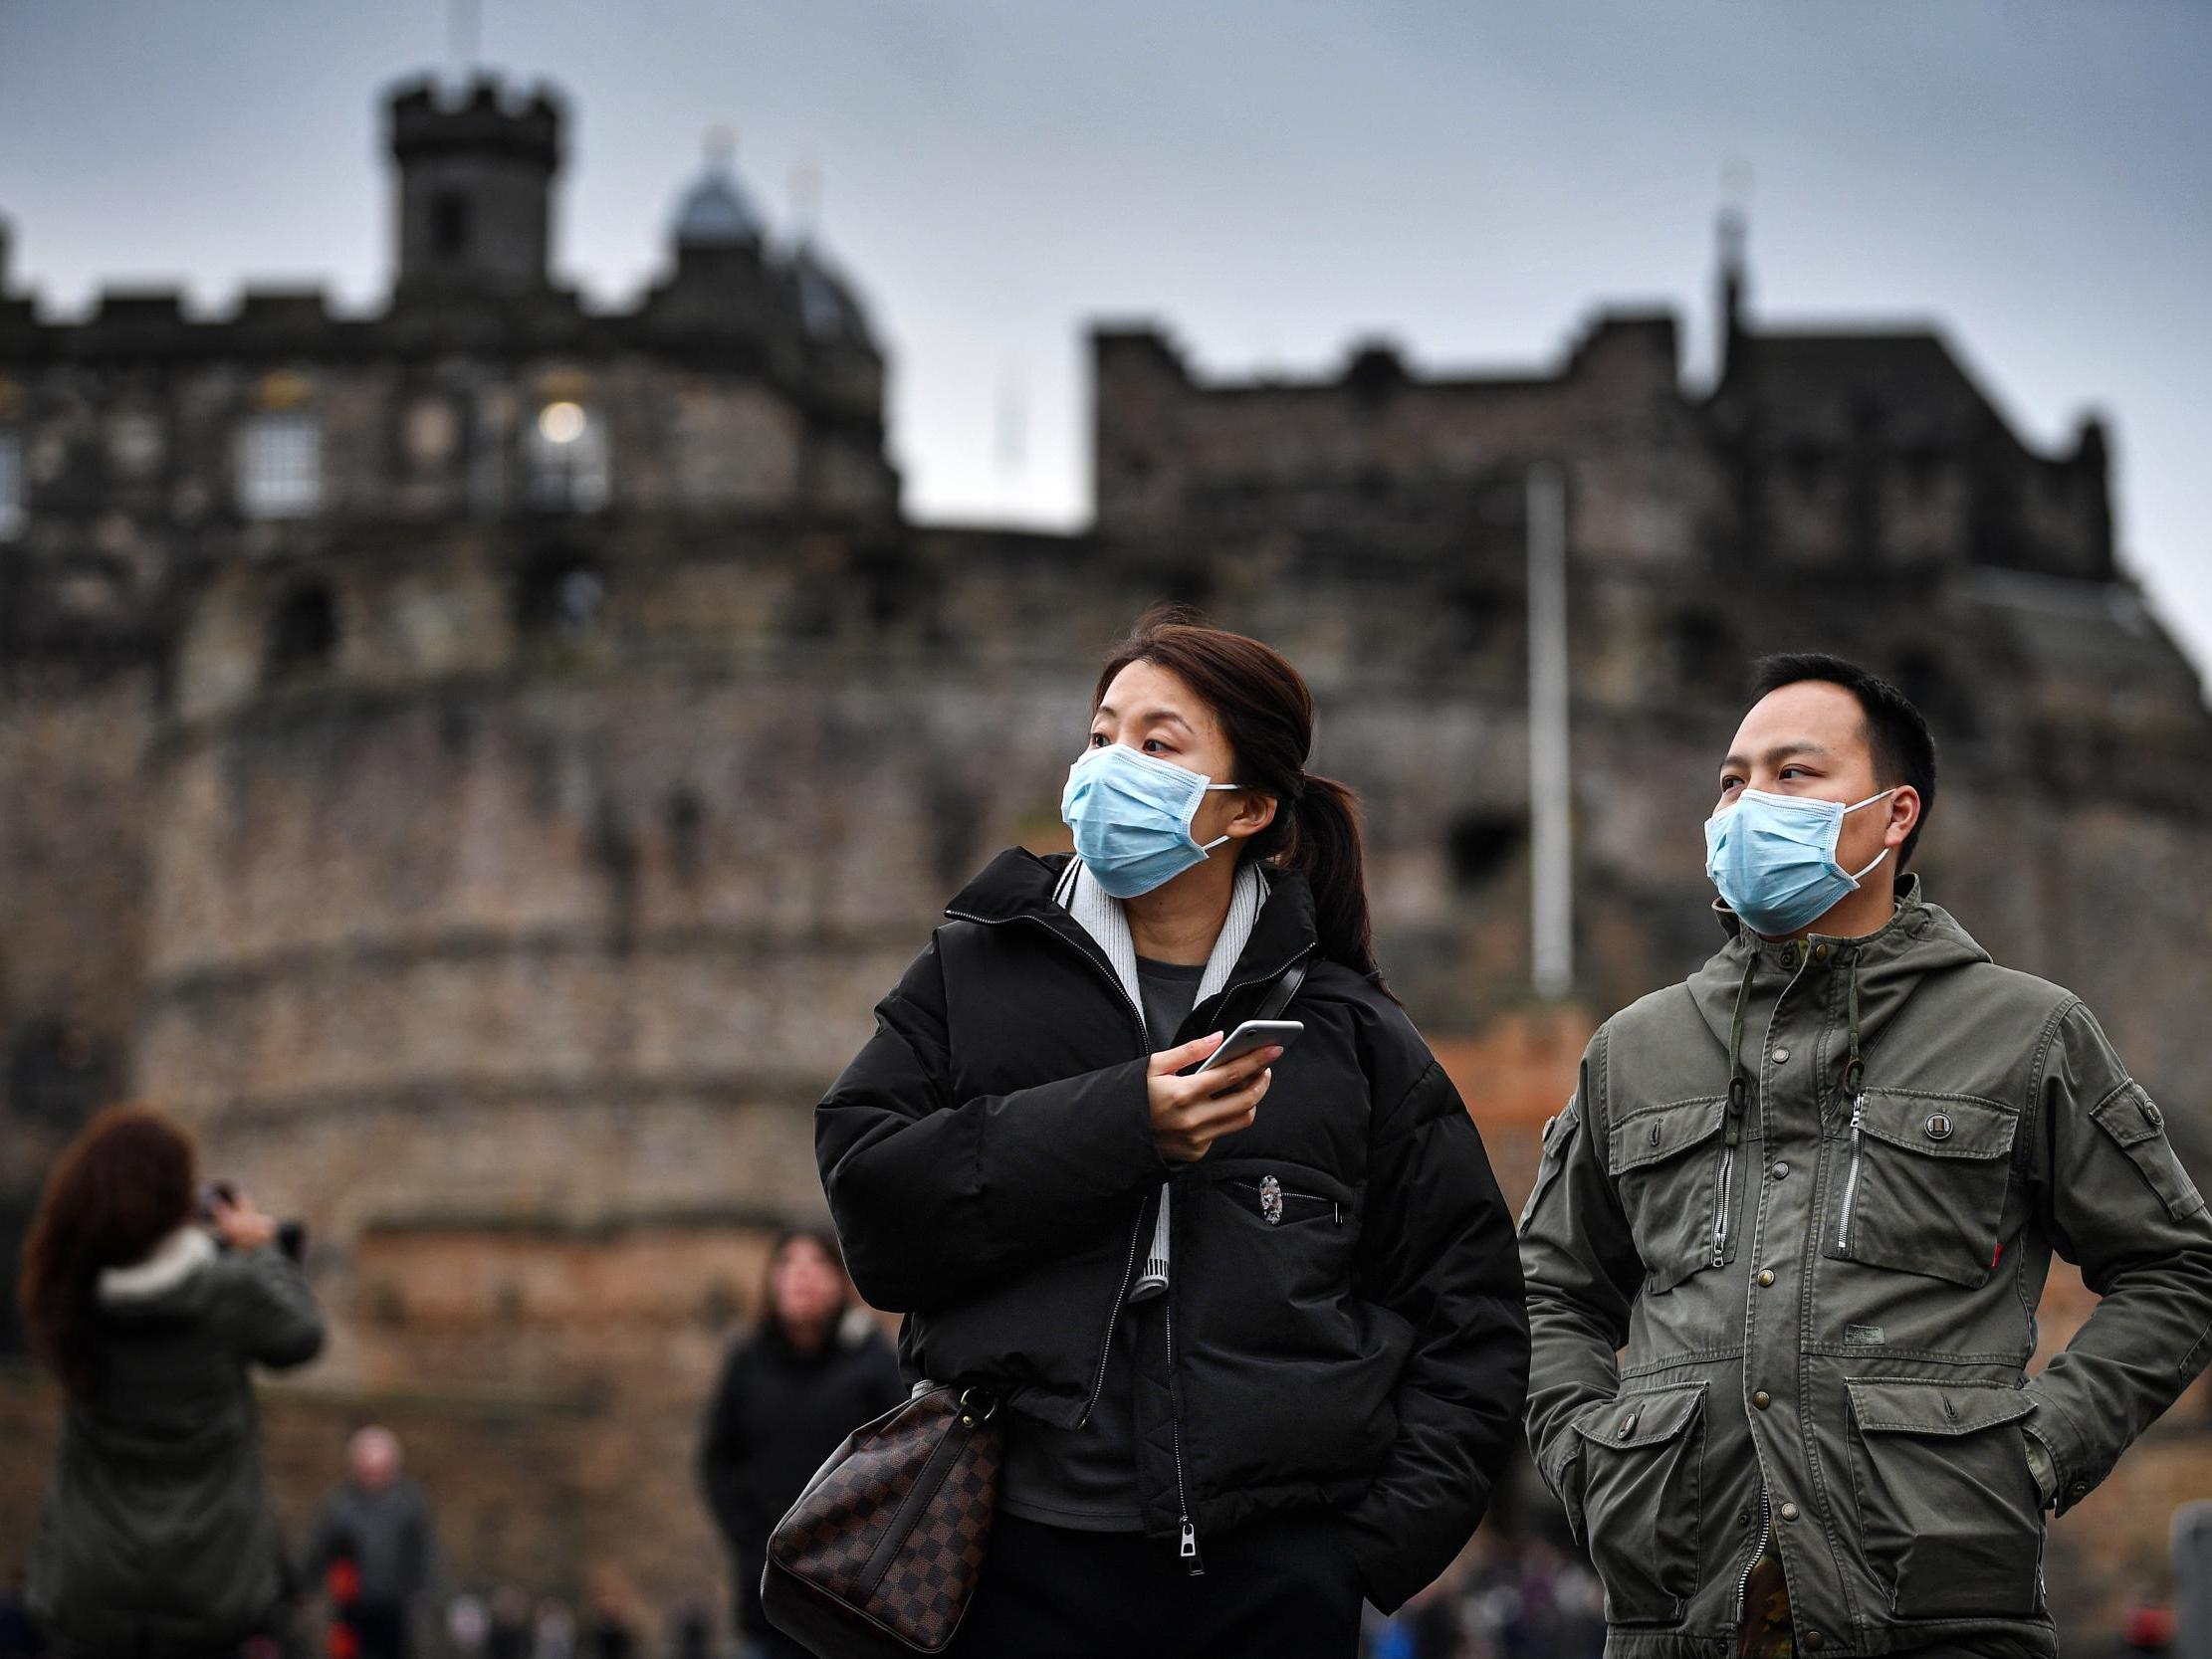 Снимаем маски: стоит ли опасаться коронавируса и какова реальная ситуация с аптеками?